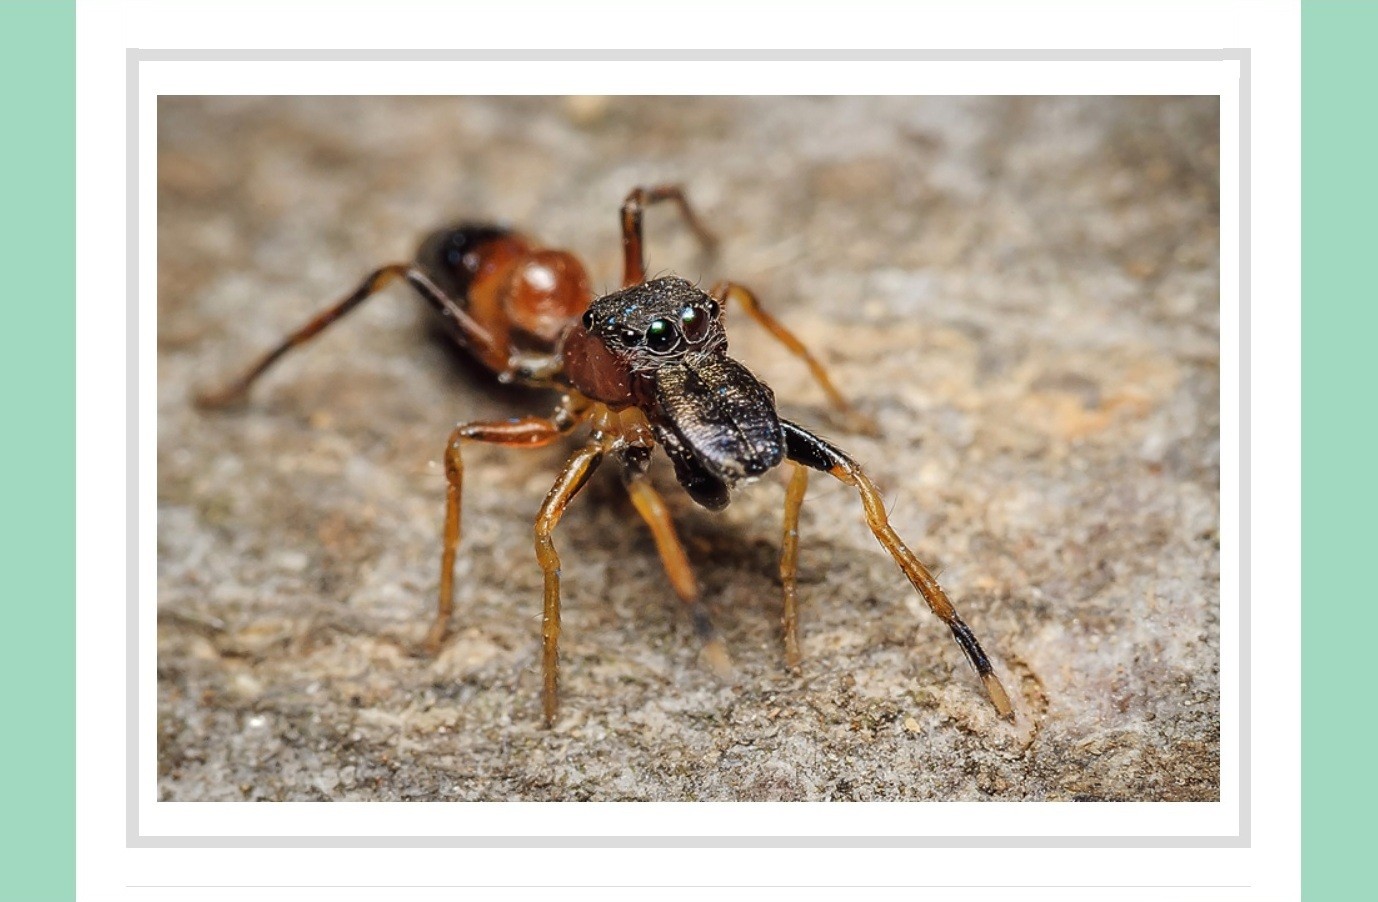 Skákavka mravenčia – európský pavúk roku 2019 / Myrmarachne formicaria – European Spider of the Year 2019